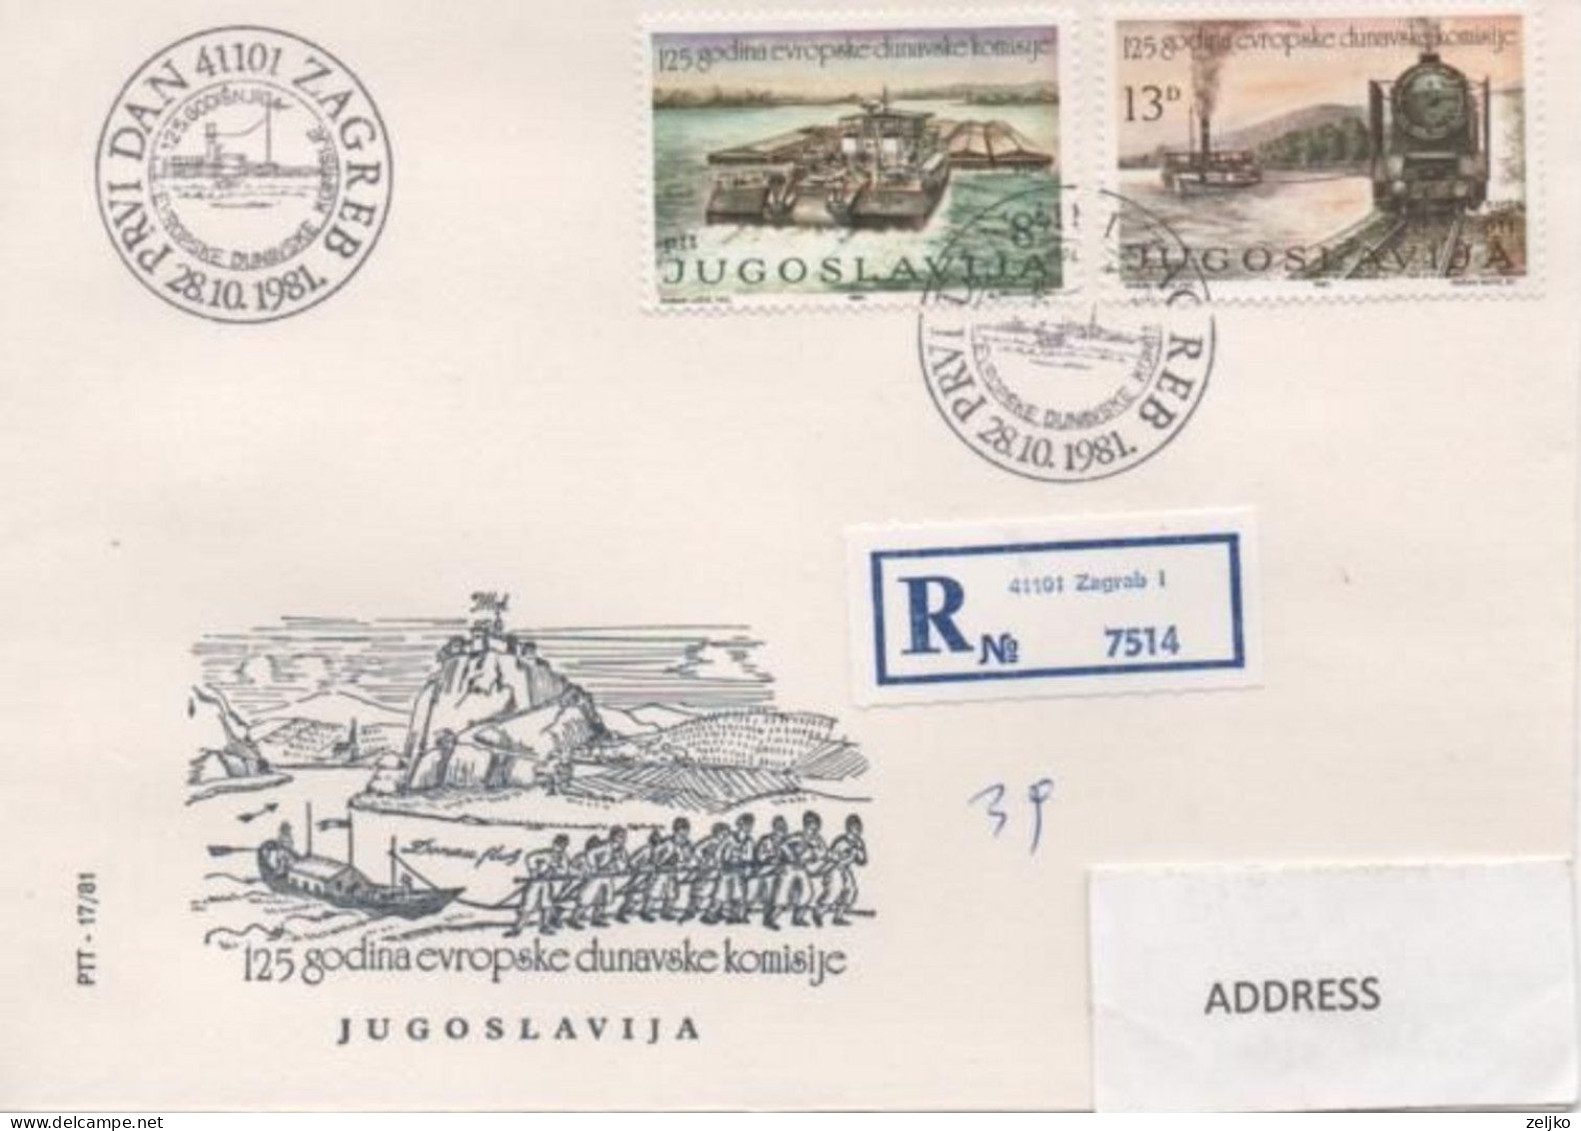 Yugoslavia 1981, Danube Conference, Train, Ship, Registered FDC, Cancel ZAGREB, Michel 1903 - 1904 - Covers & Documents